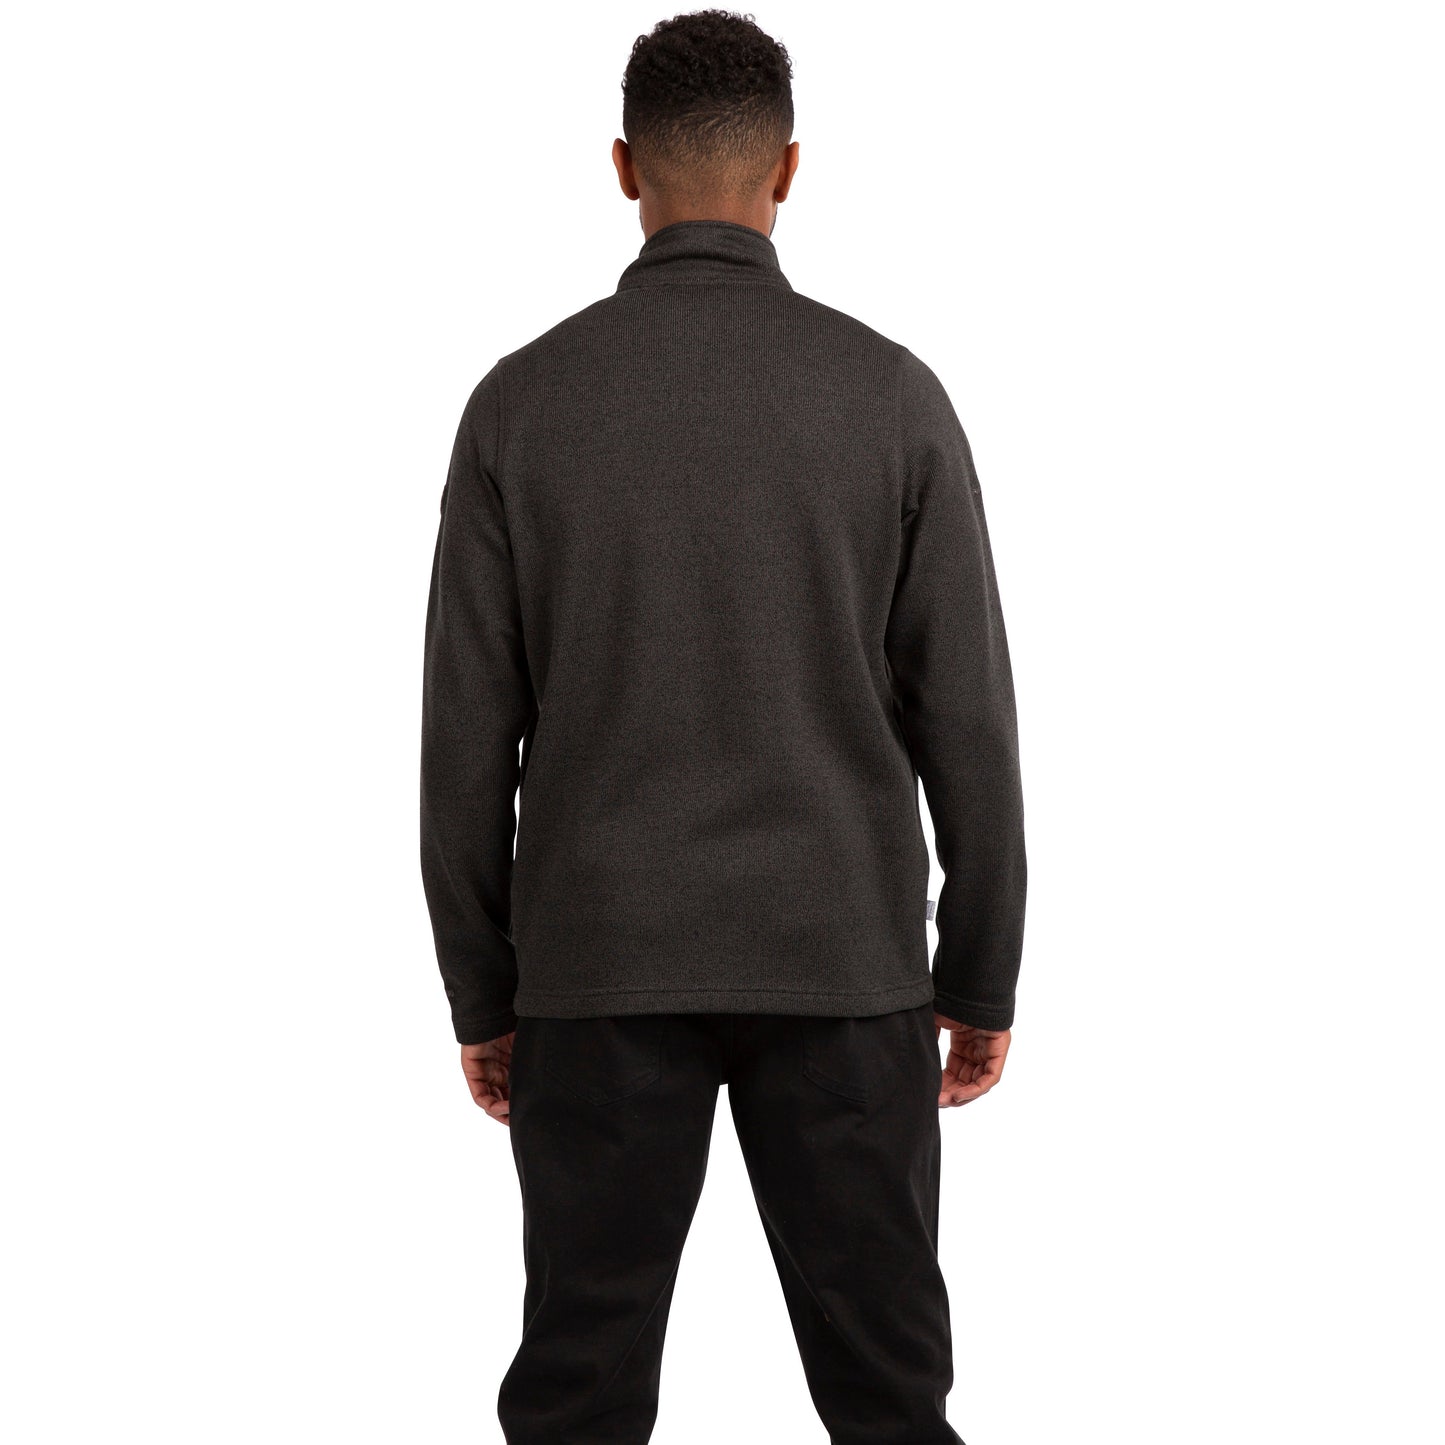 Rundel Men's Fleece Top / Jacket in Dark Grey Marl